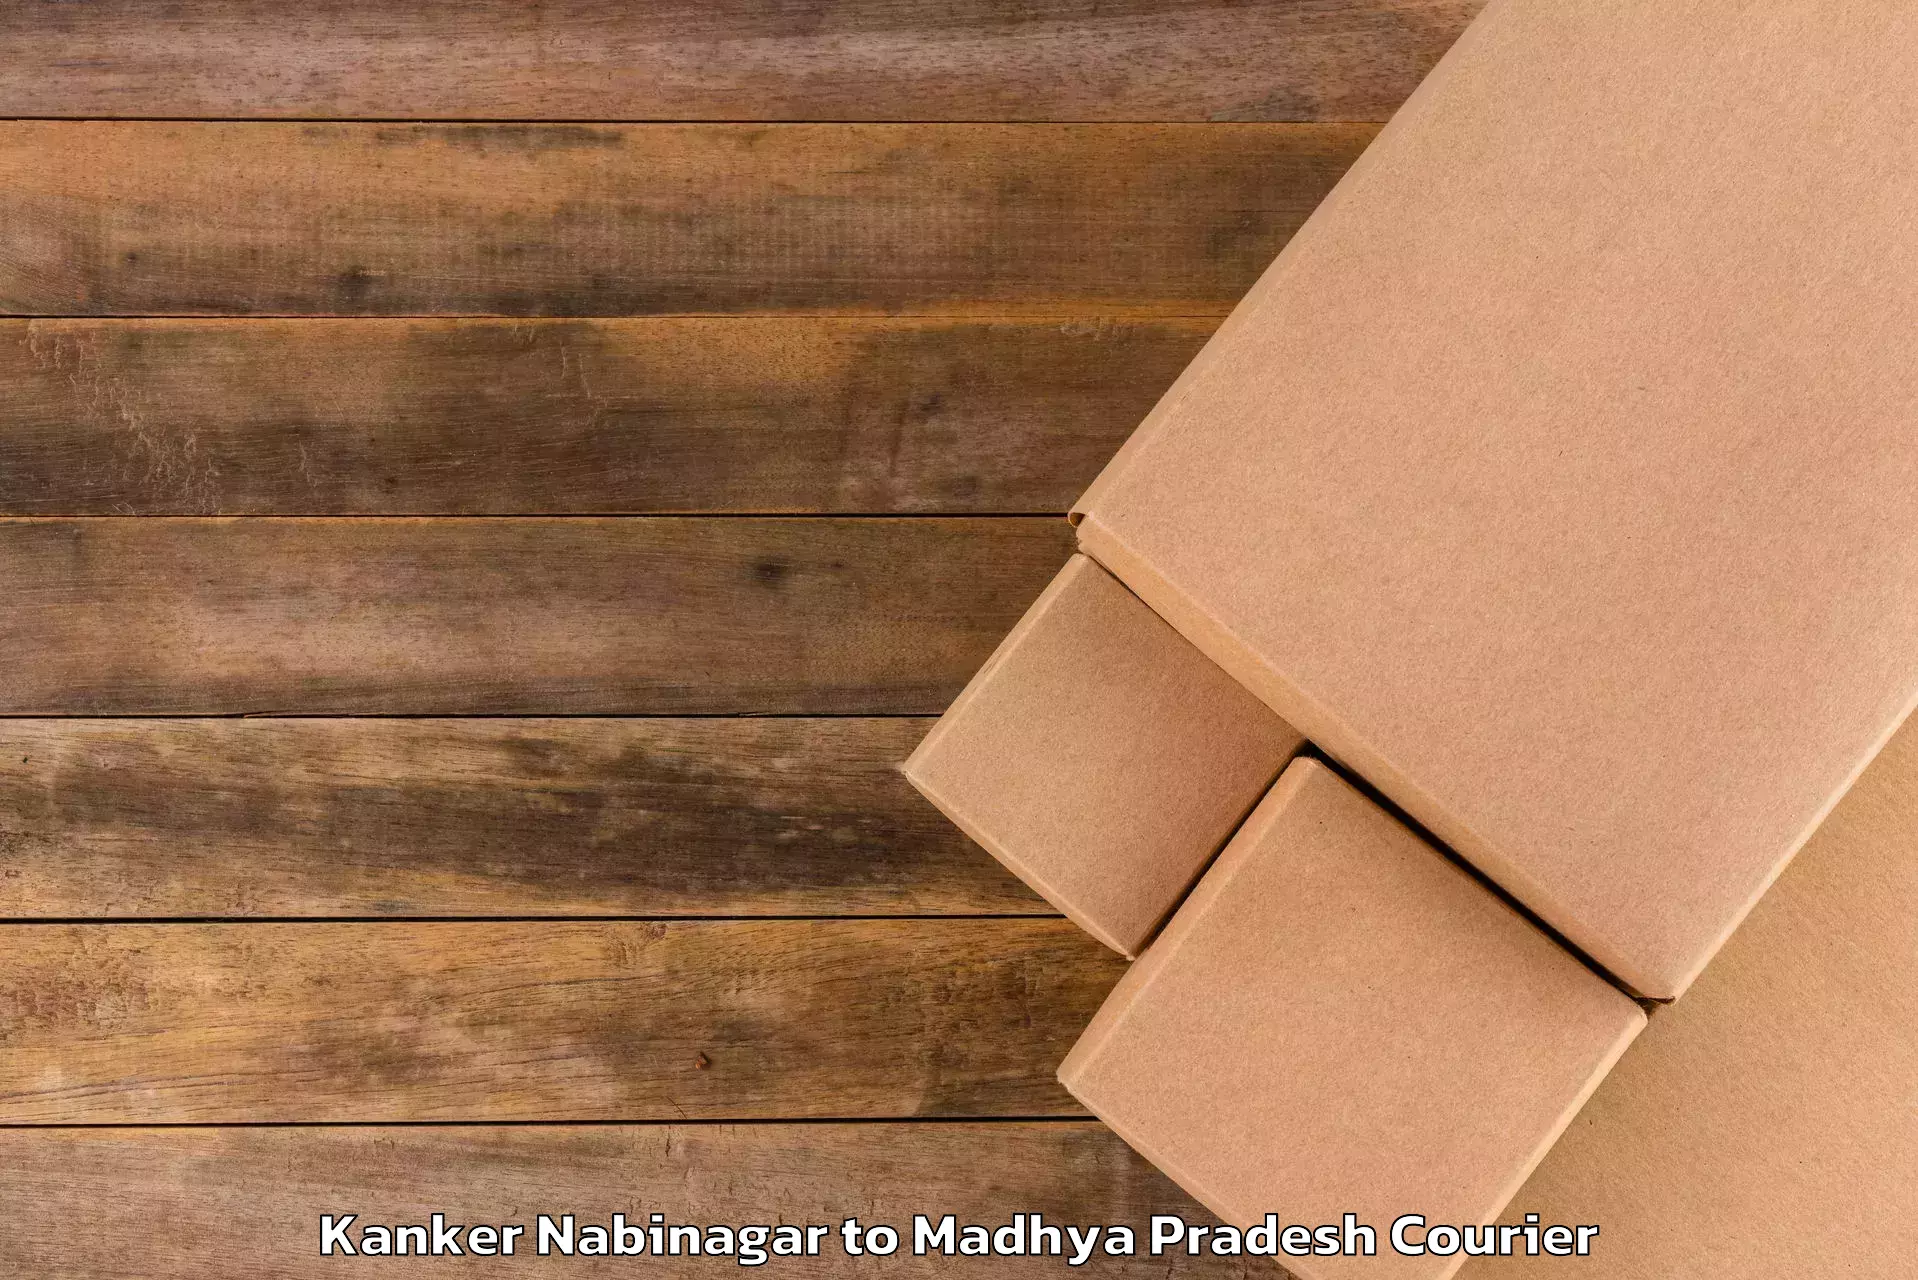 Baggage delivery management Kanker Nabinagar to Ganj Basoda